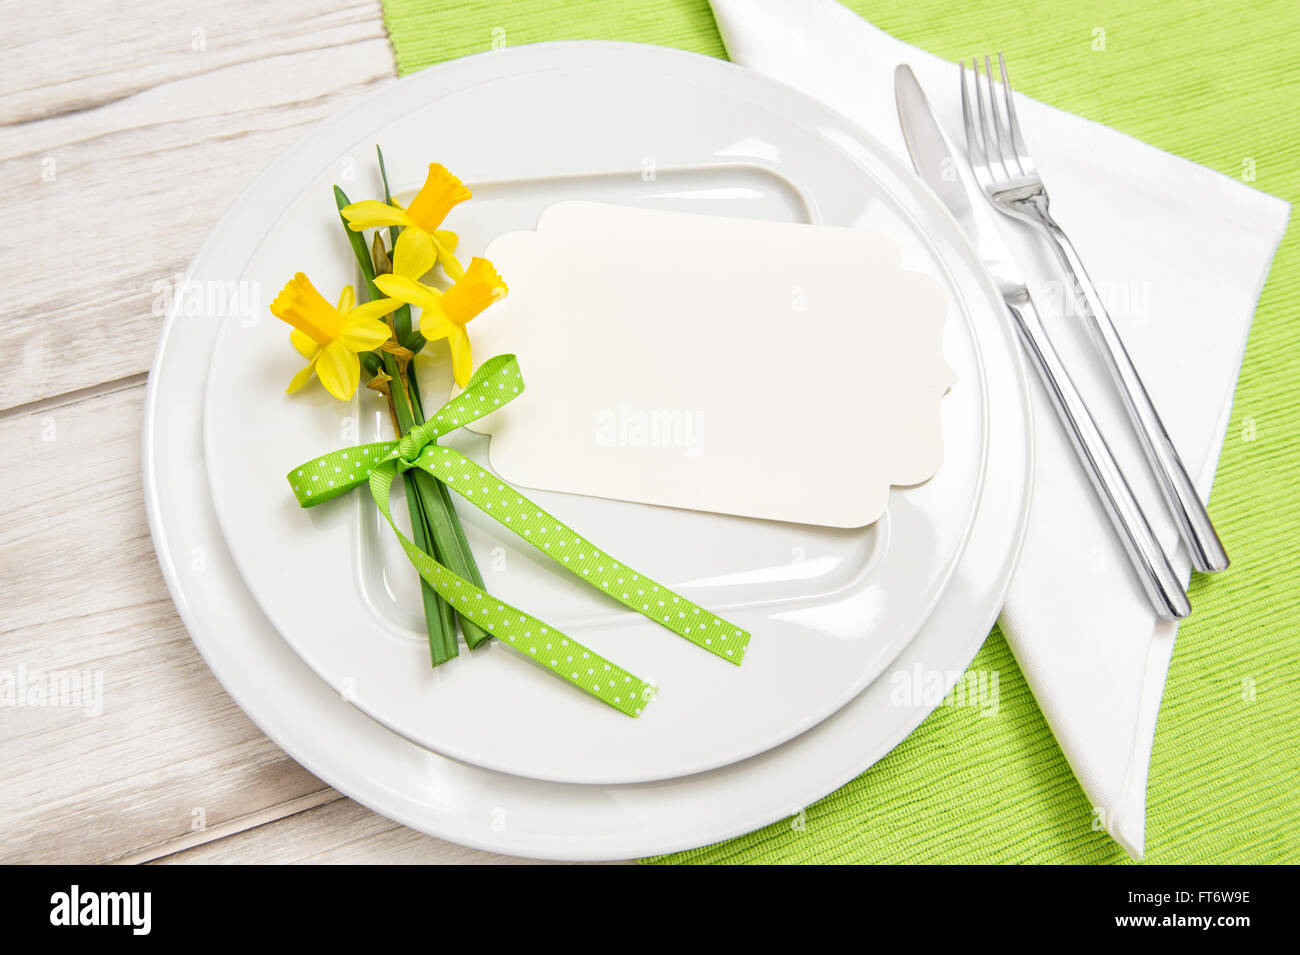 Frühling Zeit Tischdekoration mit Narzissen Blumen. Weißen Teller, Gabel, Messer Stockfoto